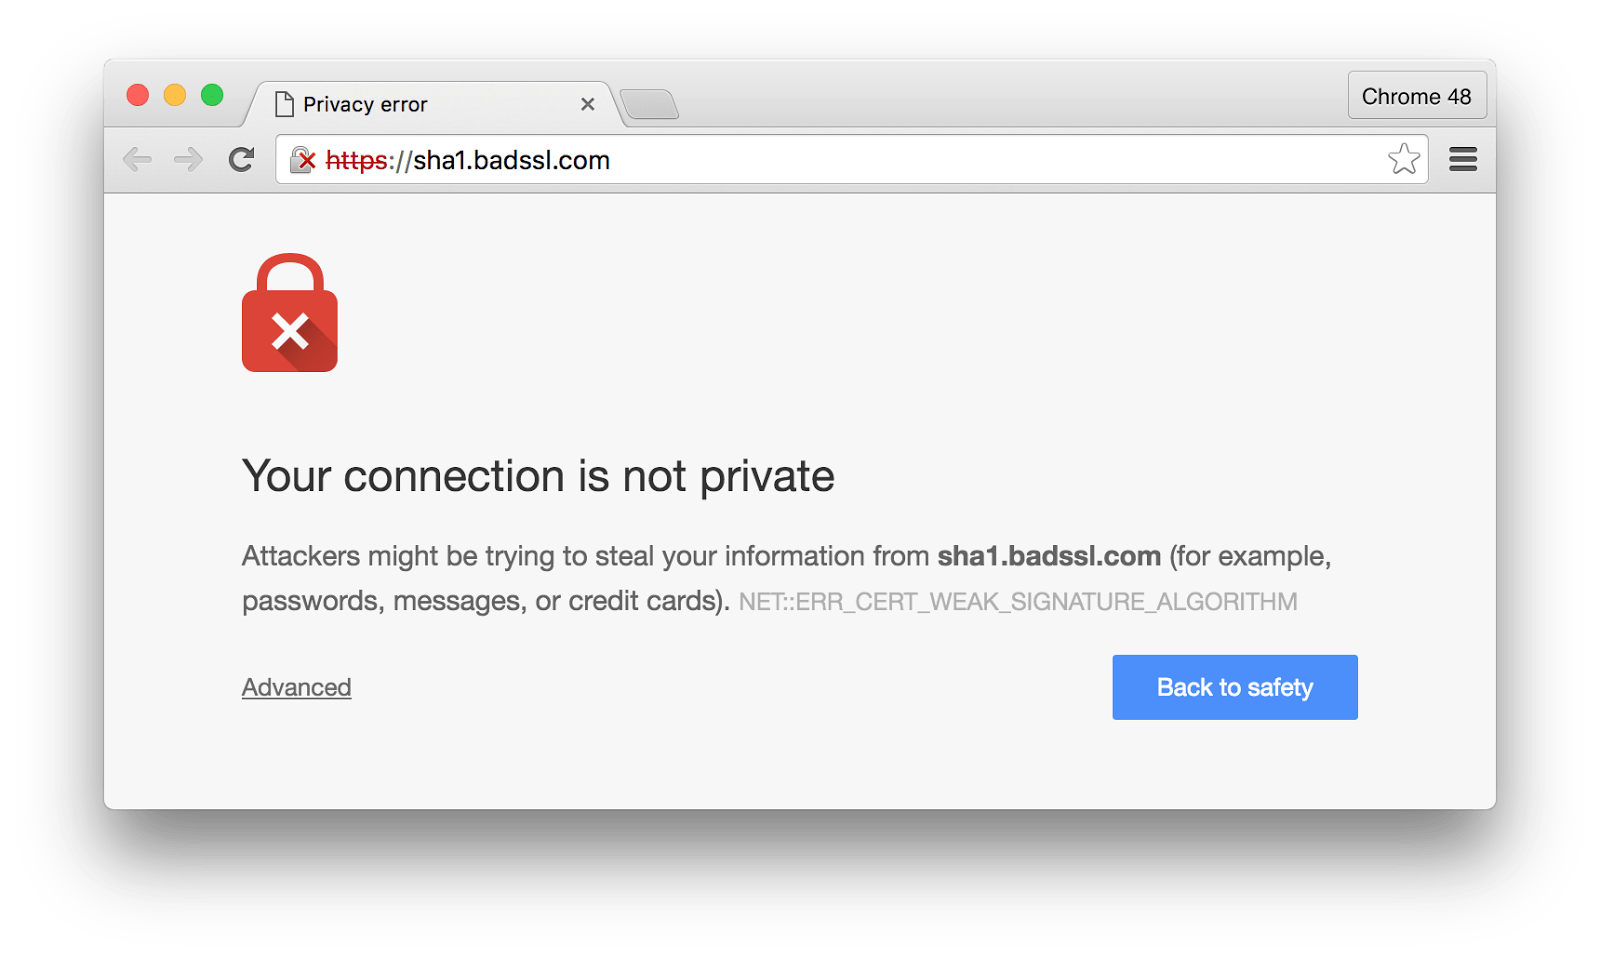 keamana web yang tidak menggunakan sertifikat ssl/tls dianggap not secured